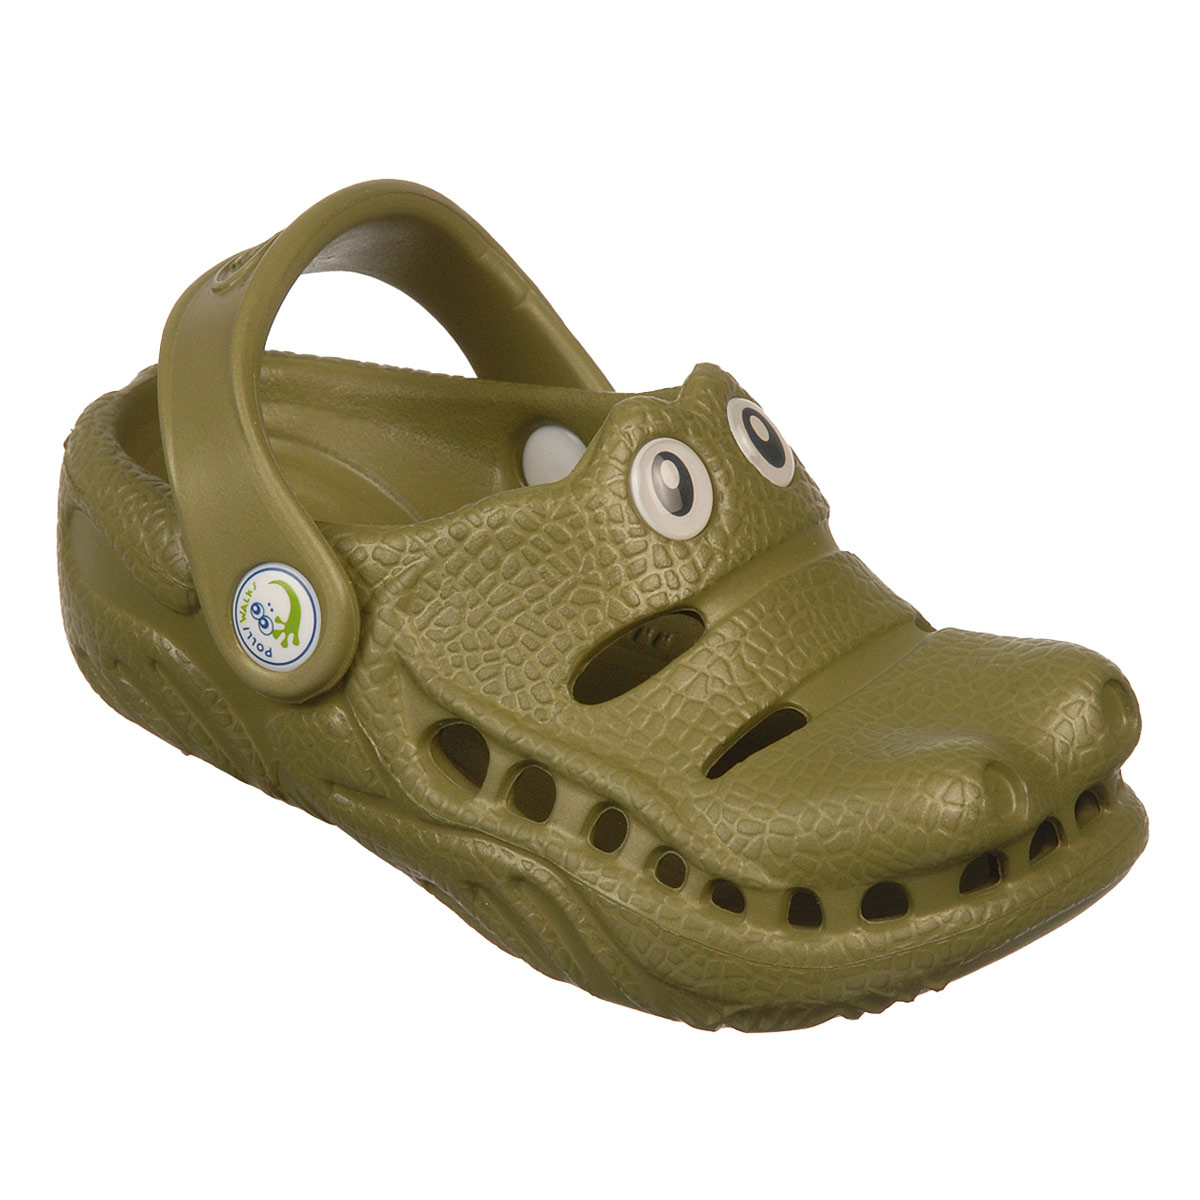 Polliwalks : Toddler shoes Gator ?Green # 9